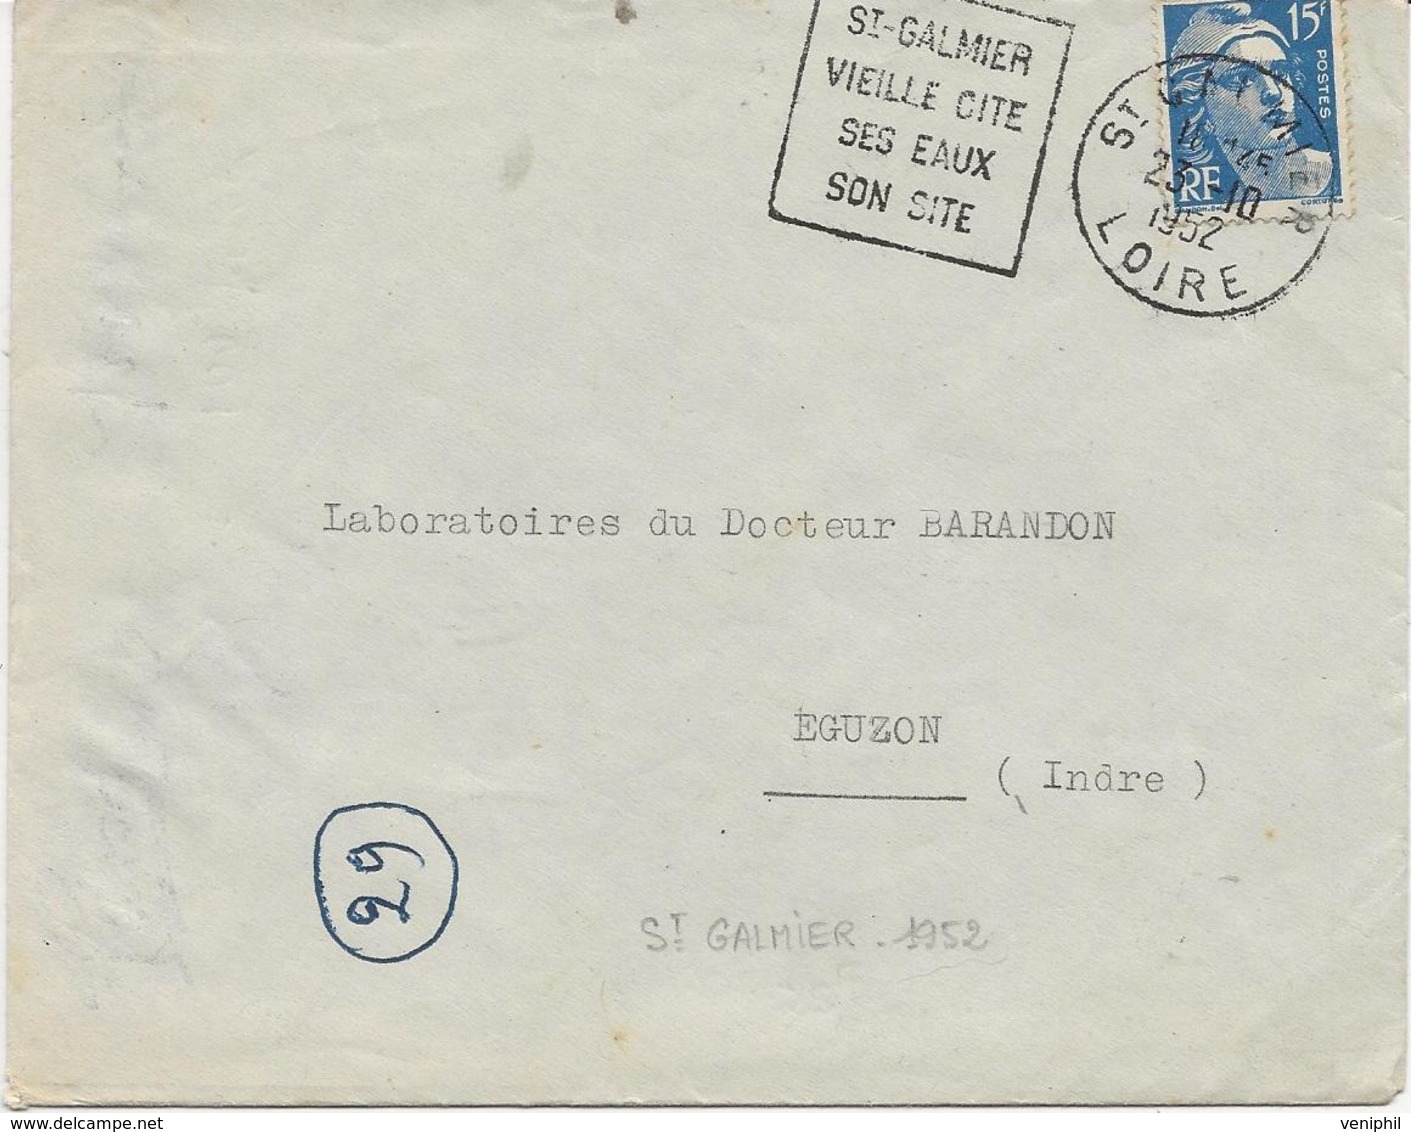 LETTRE OBLITERATION DAGUIN - ST GALMIER -LOIRE - VIEILLE CITE -SES EAUX - SON SITE - ANNEE 1952 - Oblitérations Mécaniques (Autres)